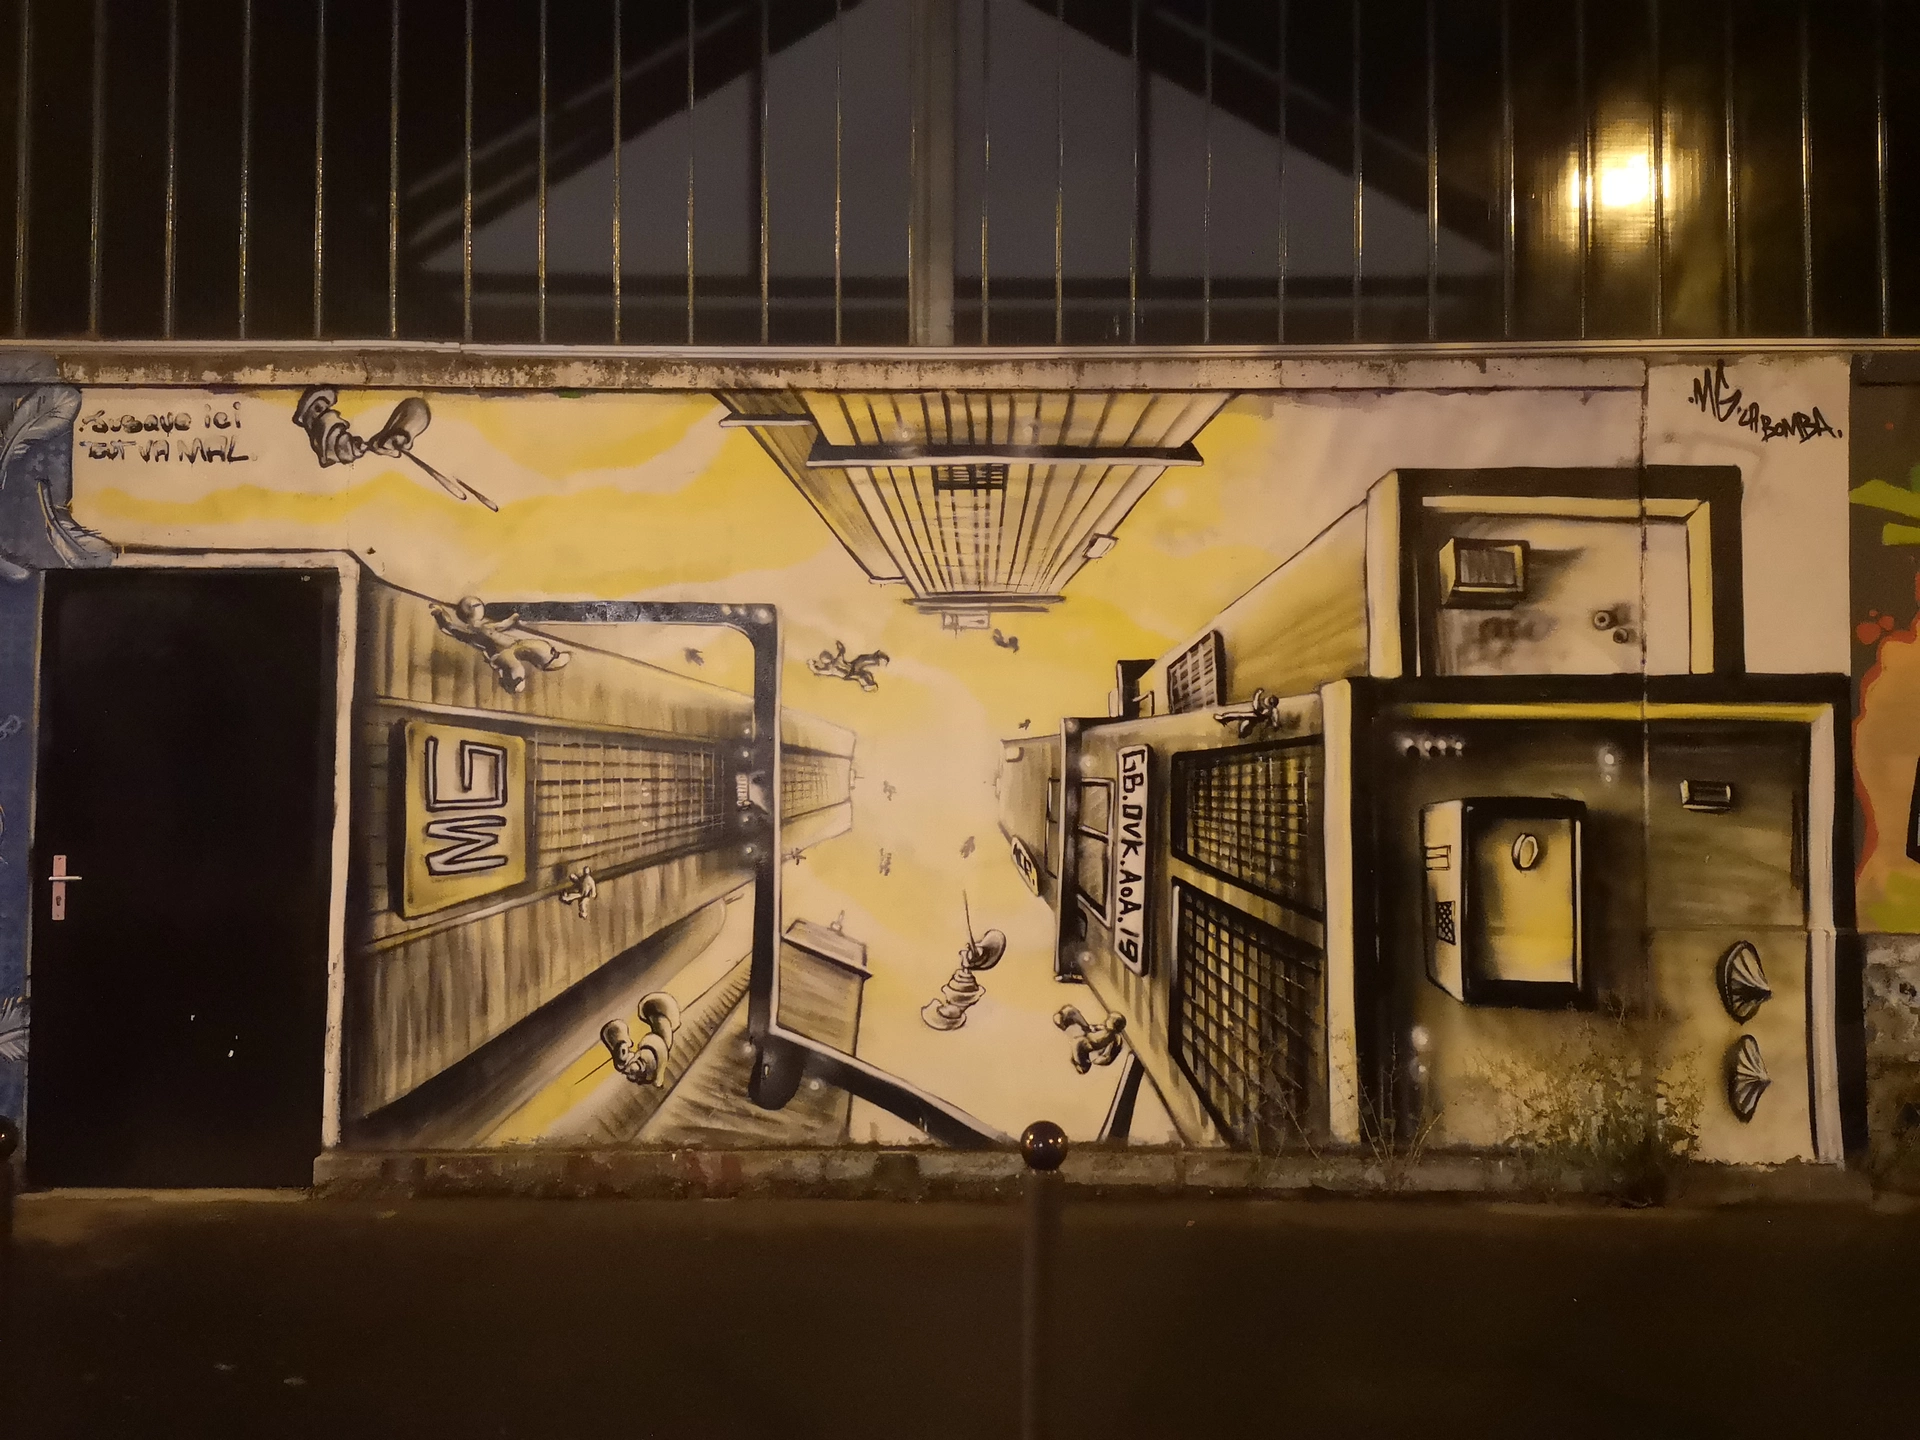 Oeuvre de Street Art réalisée par MG La Bomba à Paris